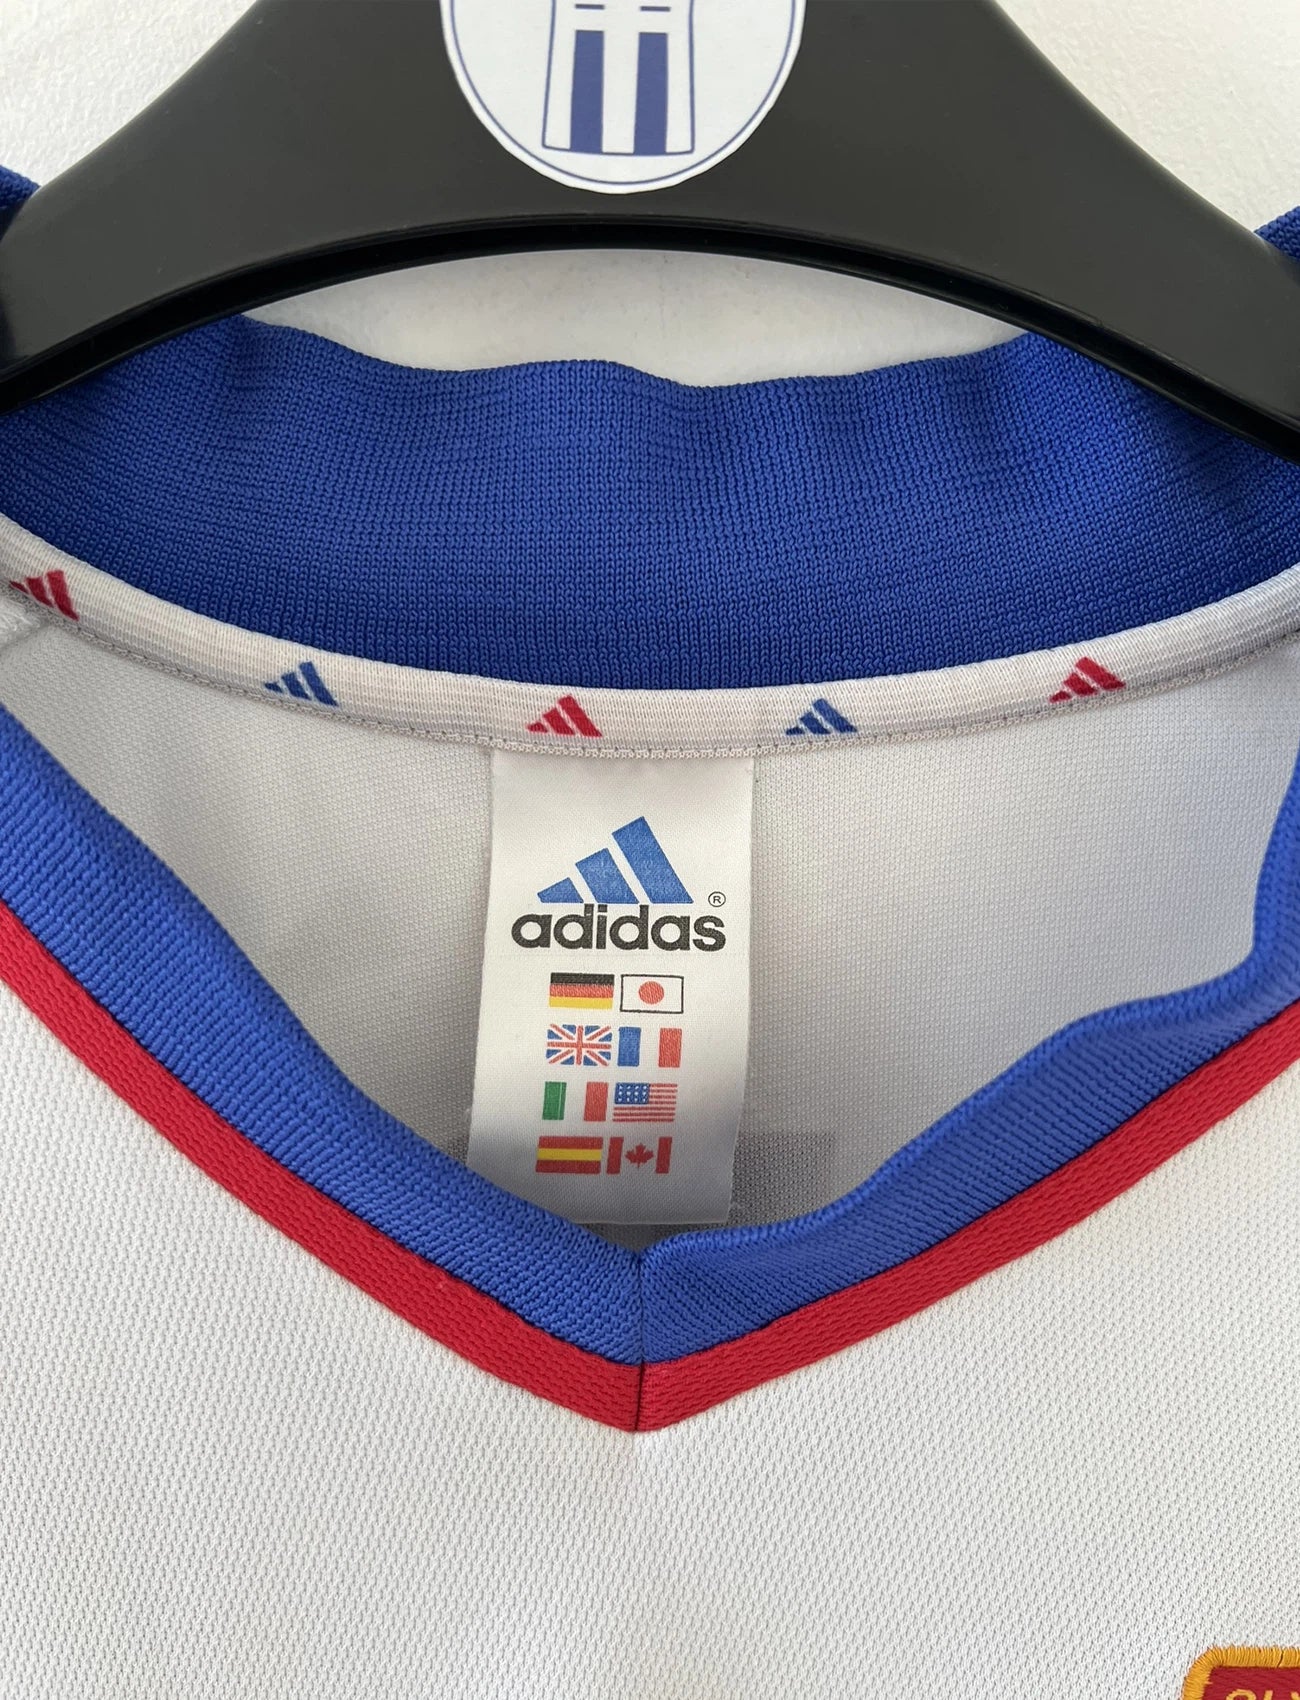 Maillot de foot vintage de l'Olympique Lyonnais de la saison 2001/2002. Le maillot est de couleur bleu, blanc et rouge. On peut retrouver l'équipementier adidas et le sponsor renault. On peut retrouver le flocage du numéro 9 Sonny Anderson au dos du maillot. Il s'agit d'un maillot authentique d'époque.